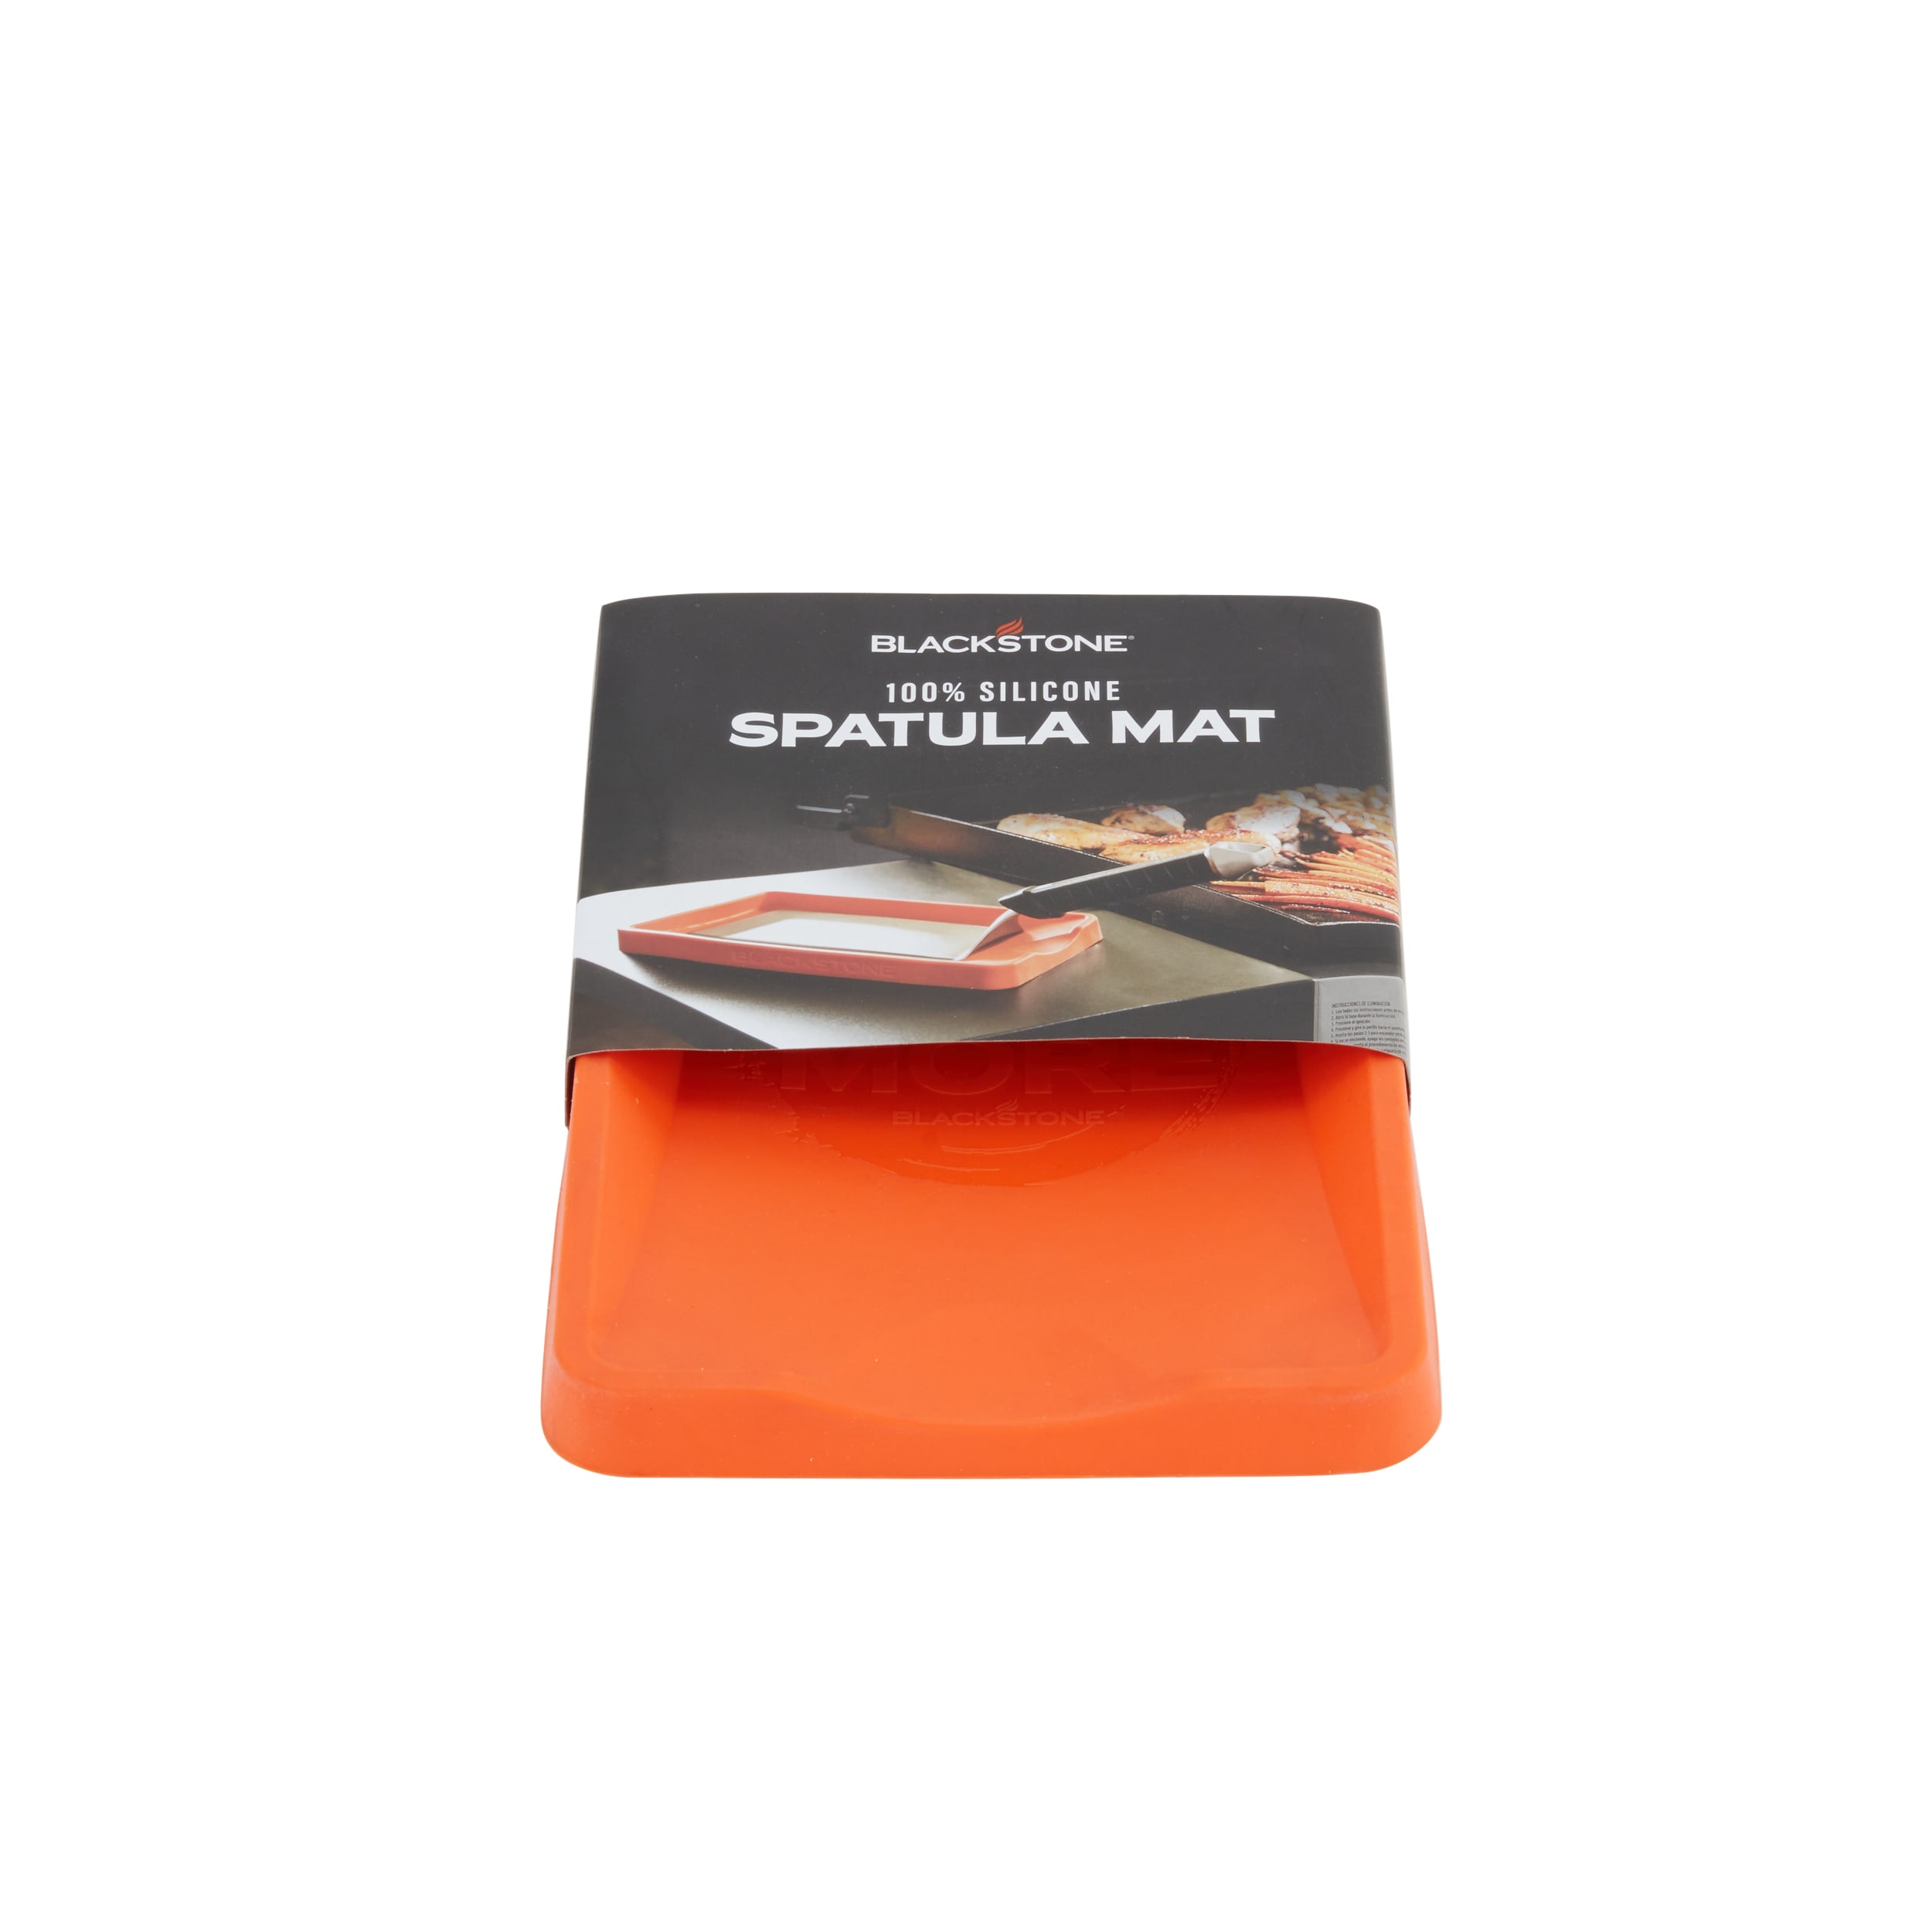 Blackstone 5097 Silicone Spatula Mat - Orange